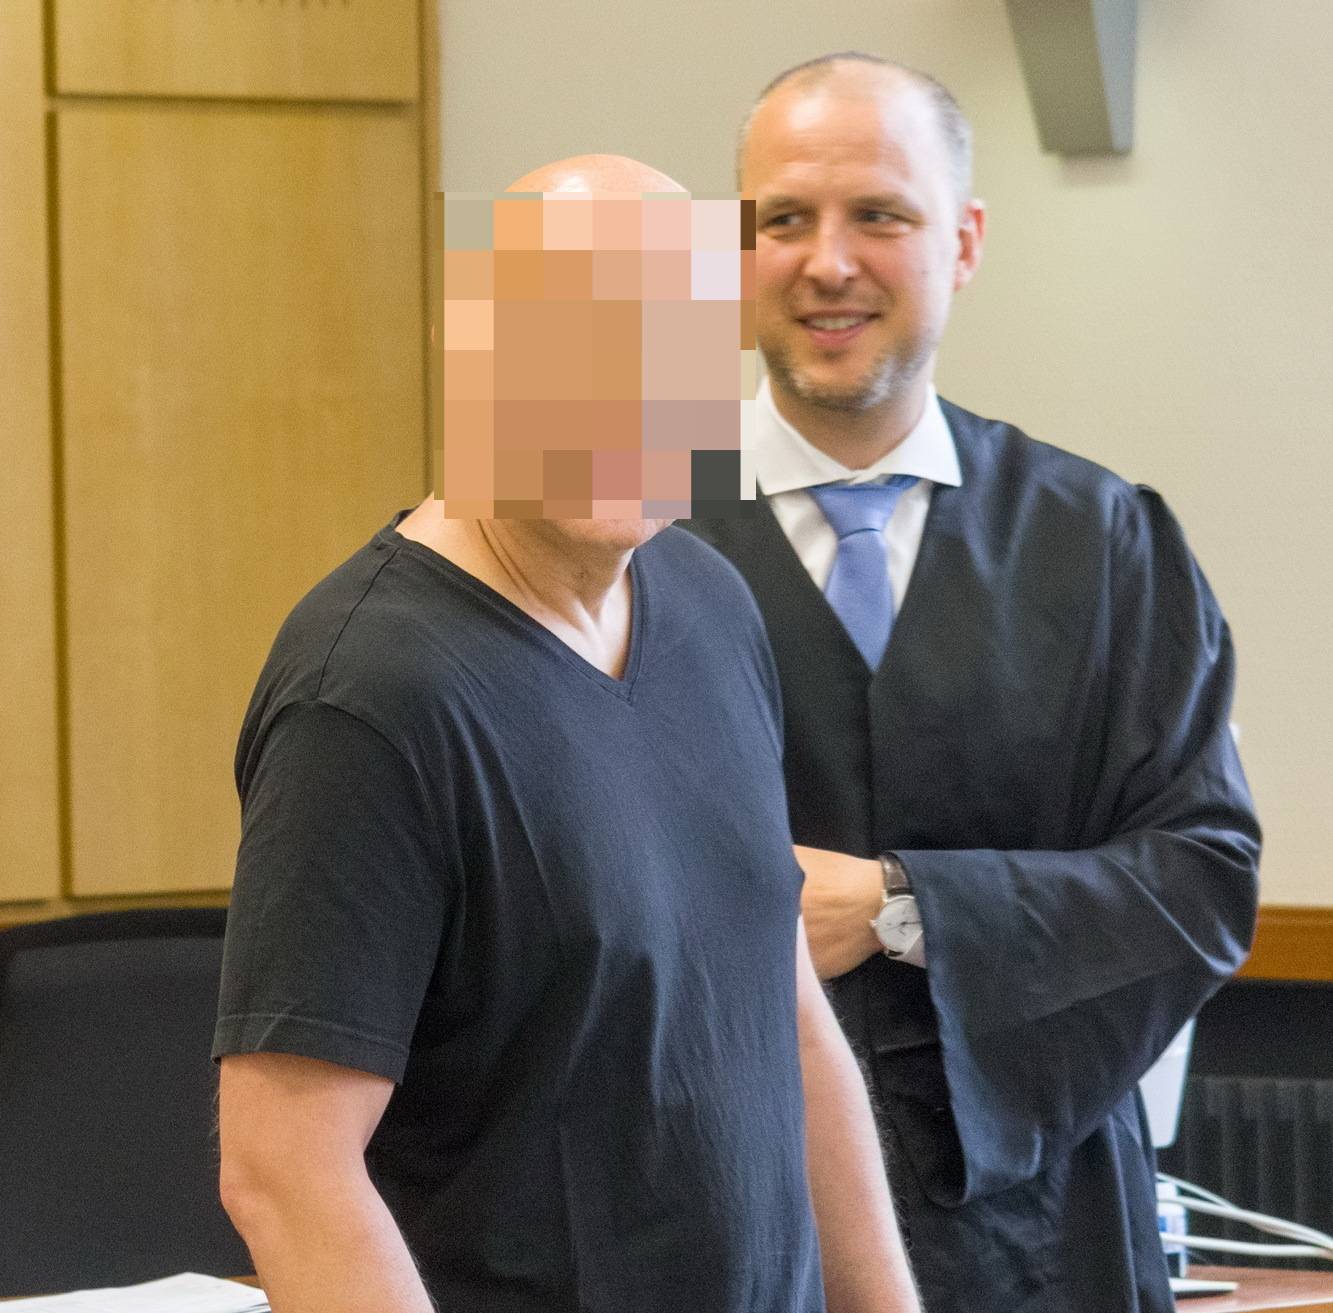  Der 49-jährige Wuppertaler (im Bild mit seinem Anwalt) war der Kopf der Bande, die mit Kalaschnikows und Panzerfaustattrappen diverse Geldtransporter überfiel. 